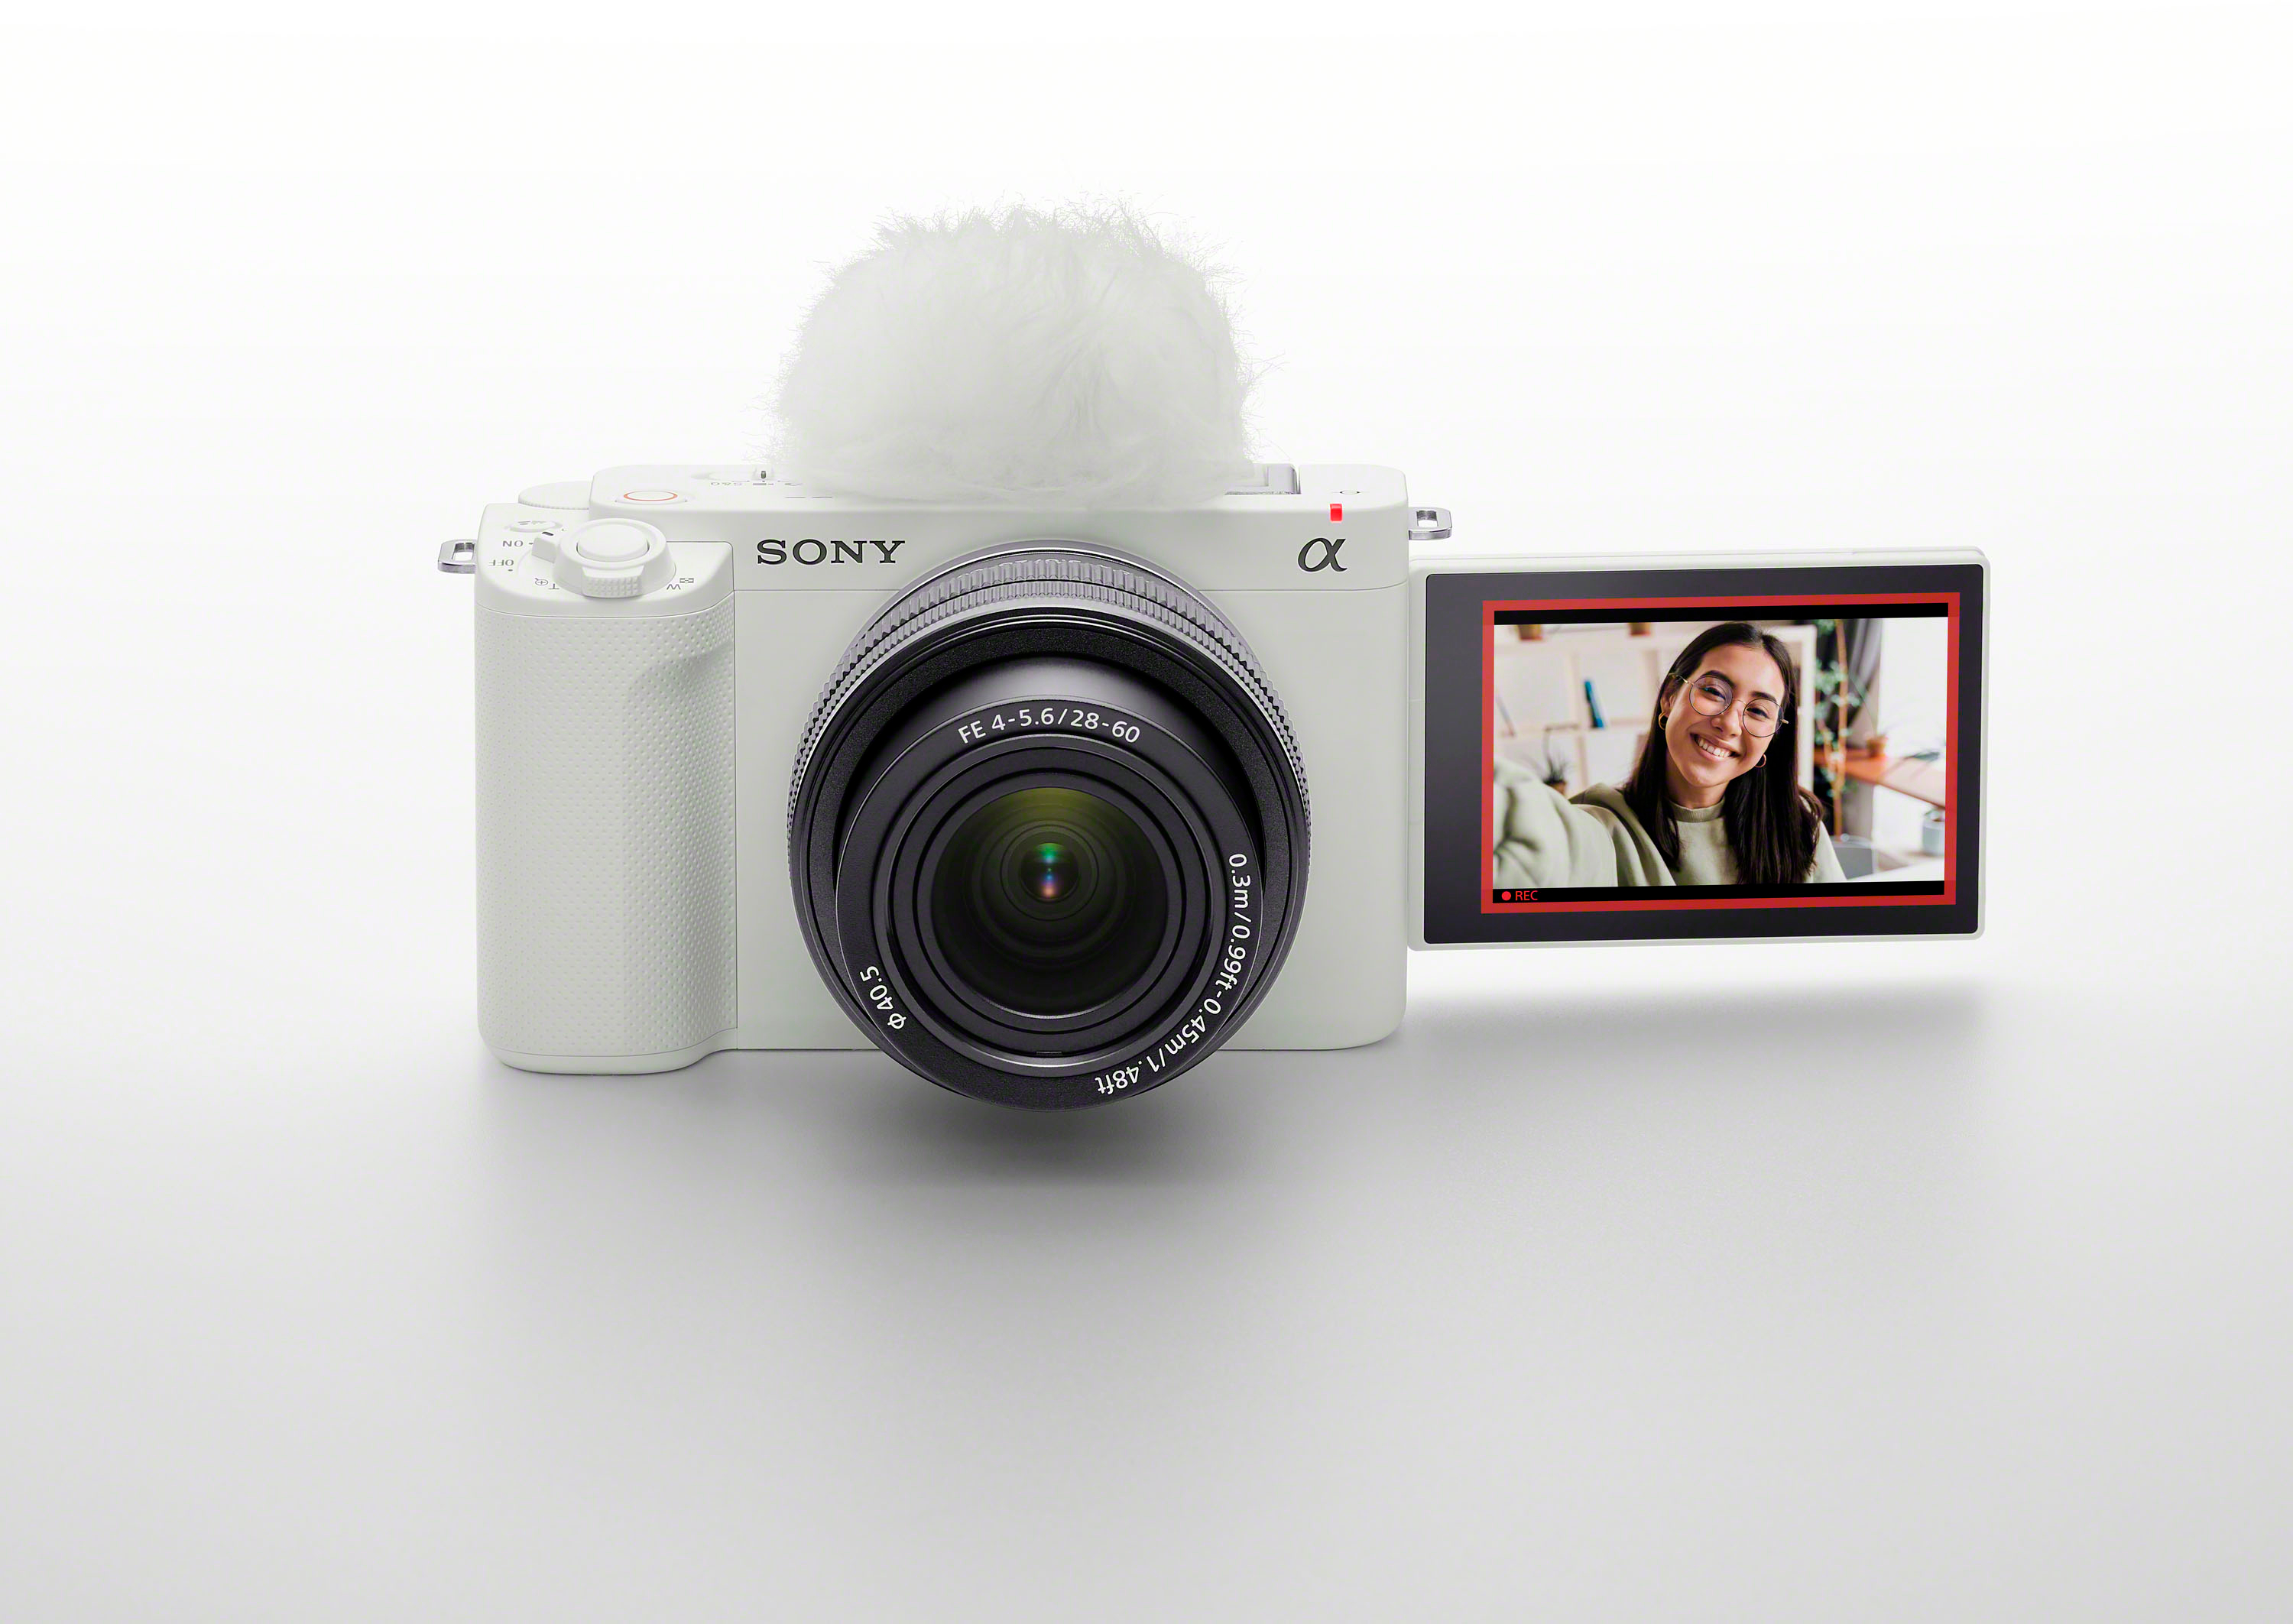 Sony Alpha ZV-E1 Full-Frame Interchangeable Lens Mirrorless Vlog Camera -  Black Body